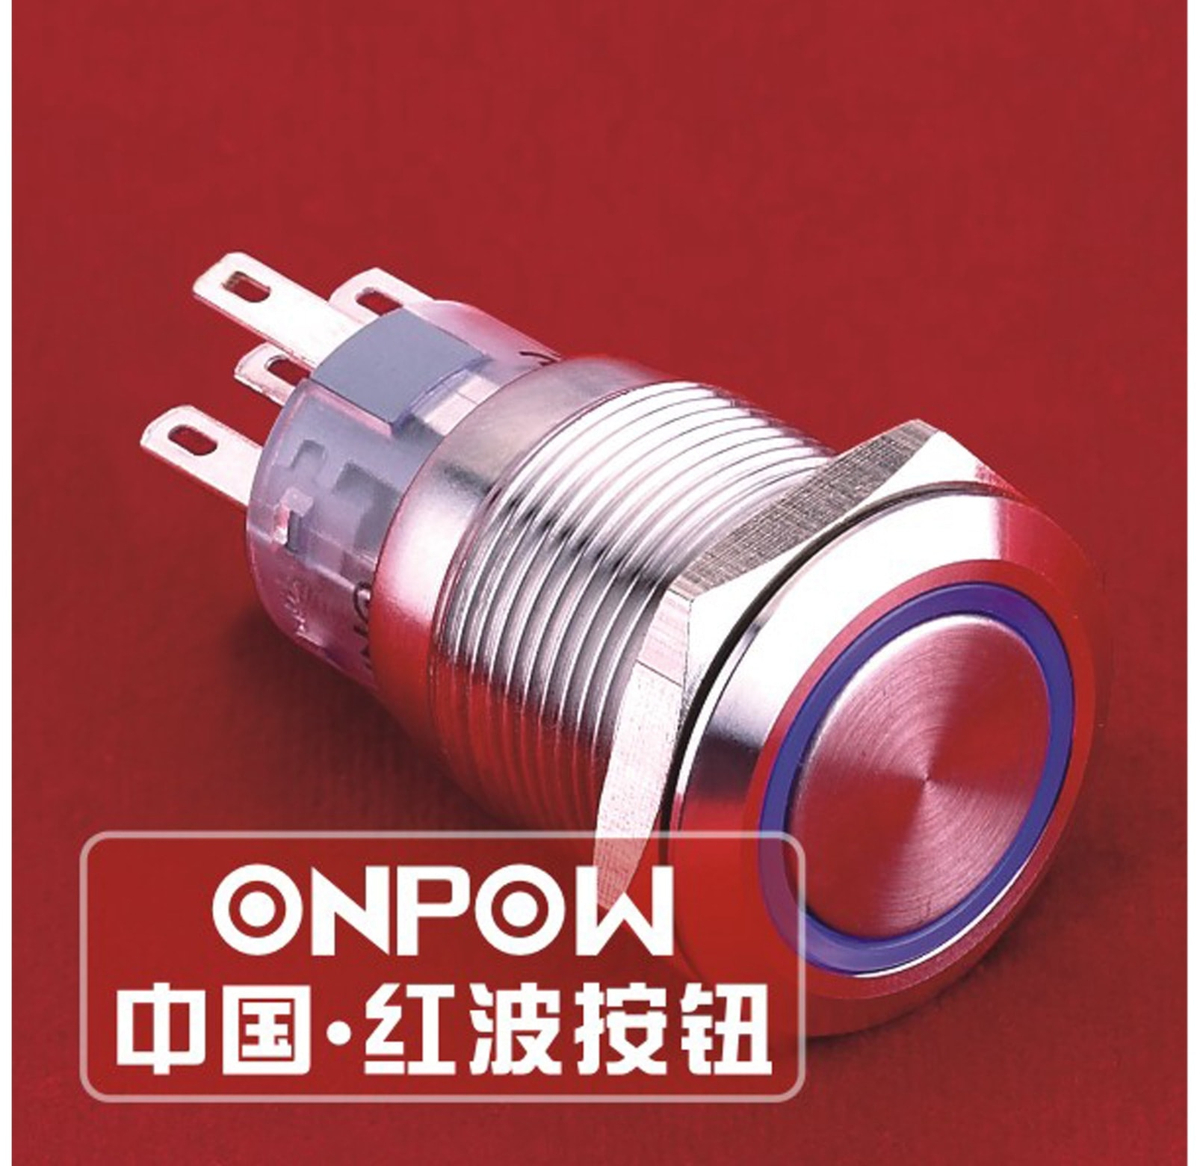 ONPOW Schalter, 24 V/DC, 1x Off/On, Beleuchtung rot, Lötanschluss, flach rund, Edelstahl, 19 mm von ONPOW